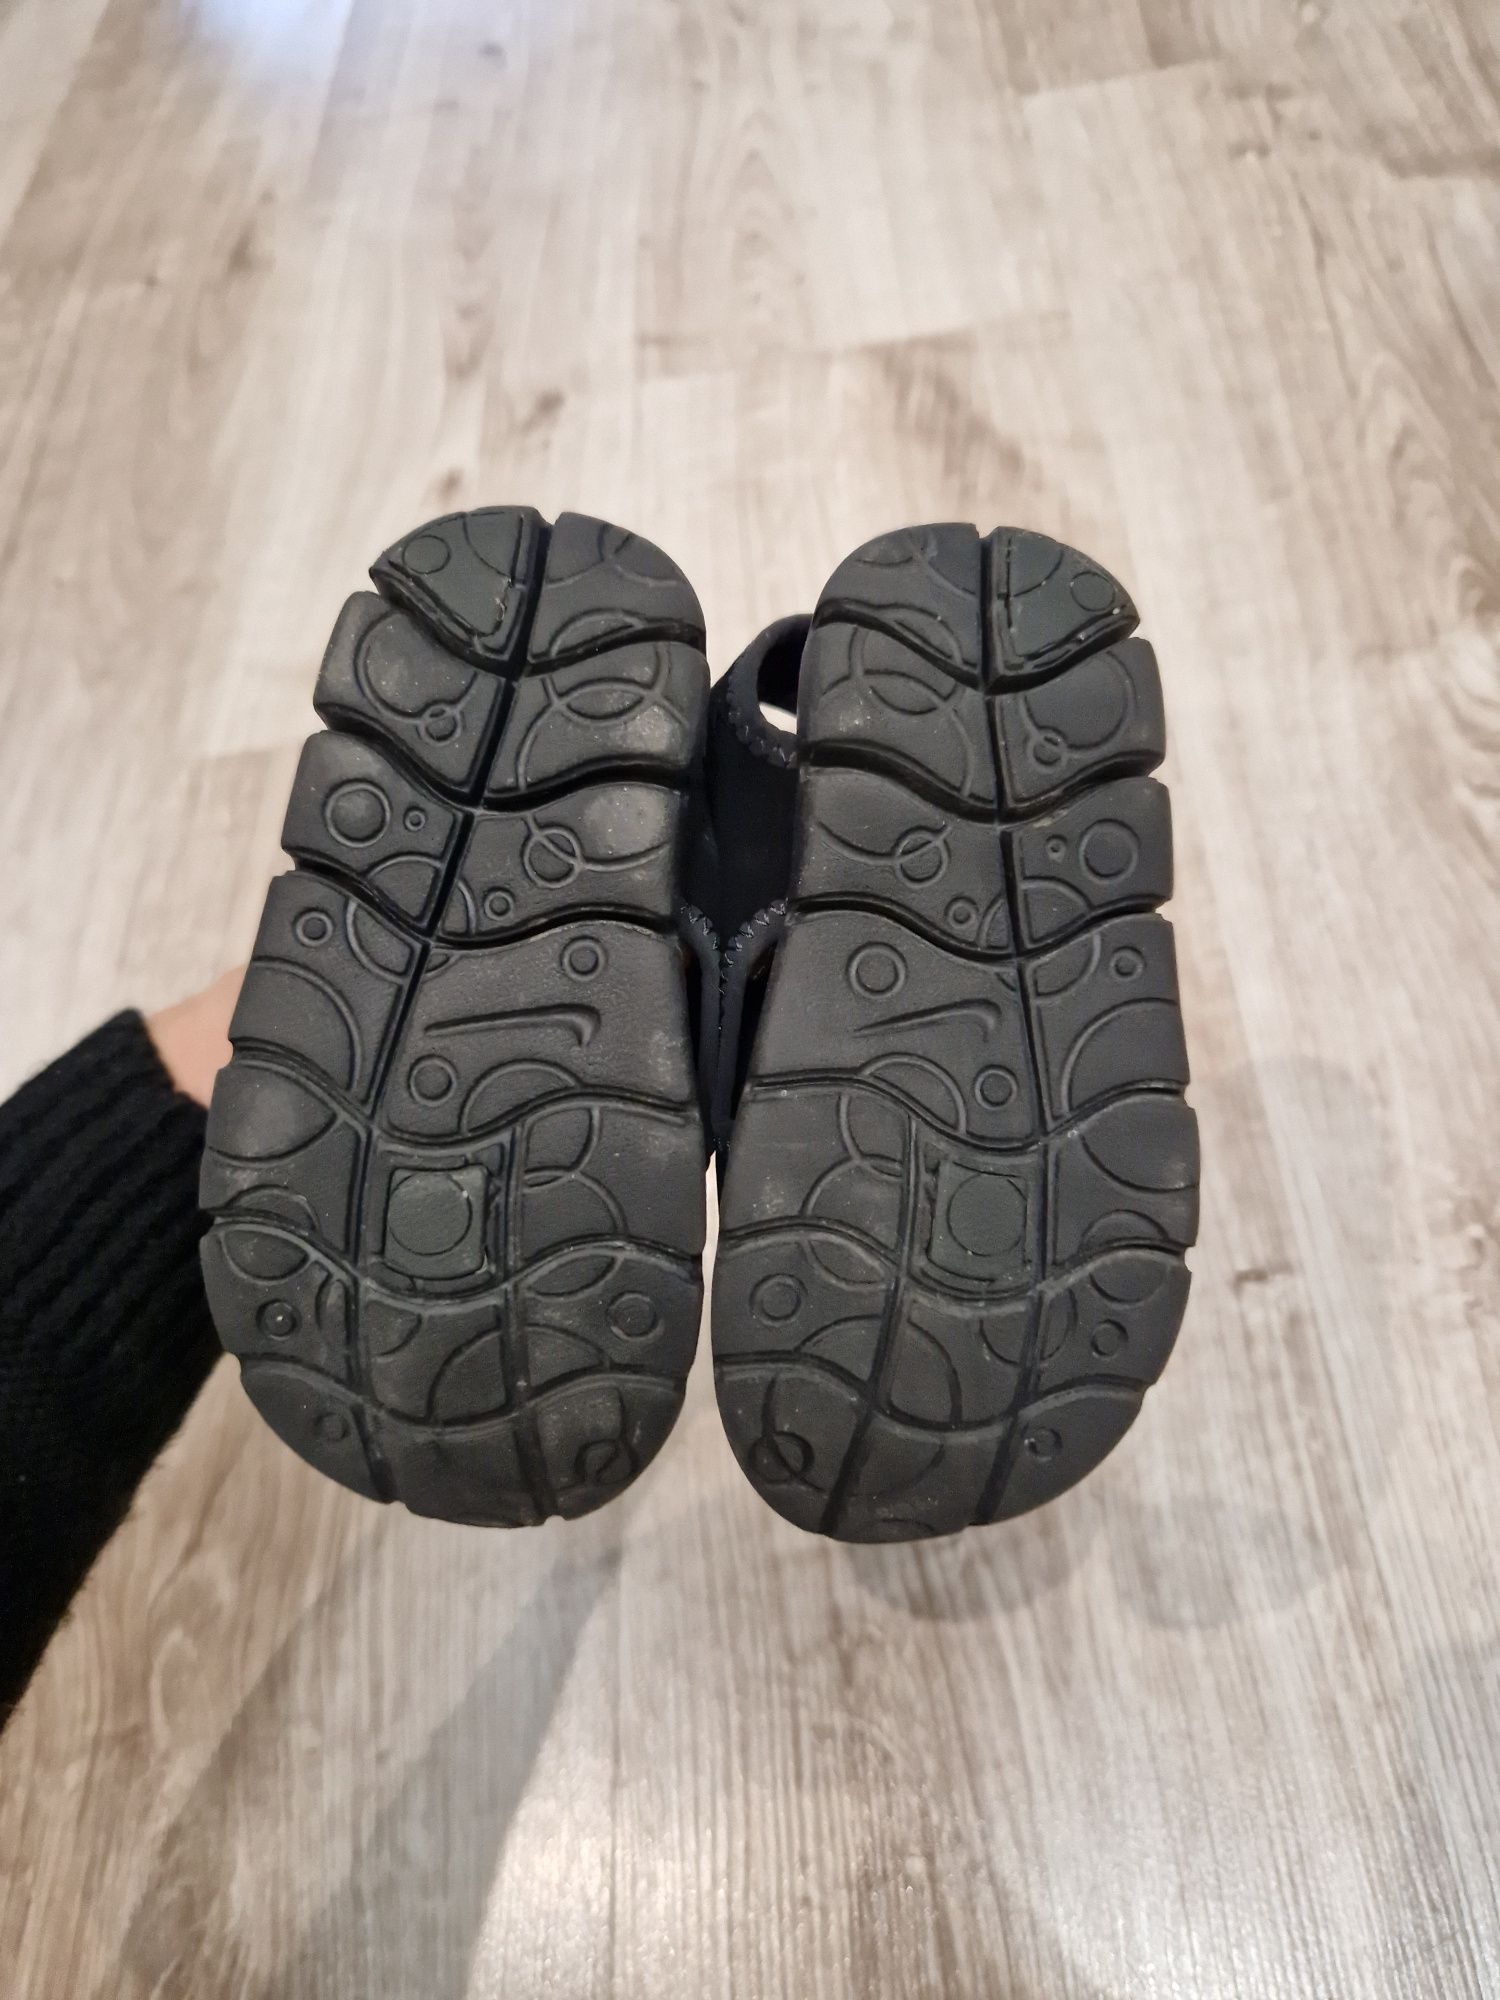 Sandały Nike Sunray Adjust 4 czarne 23.5 , 13 cm. Sandały na rzepy Świ